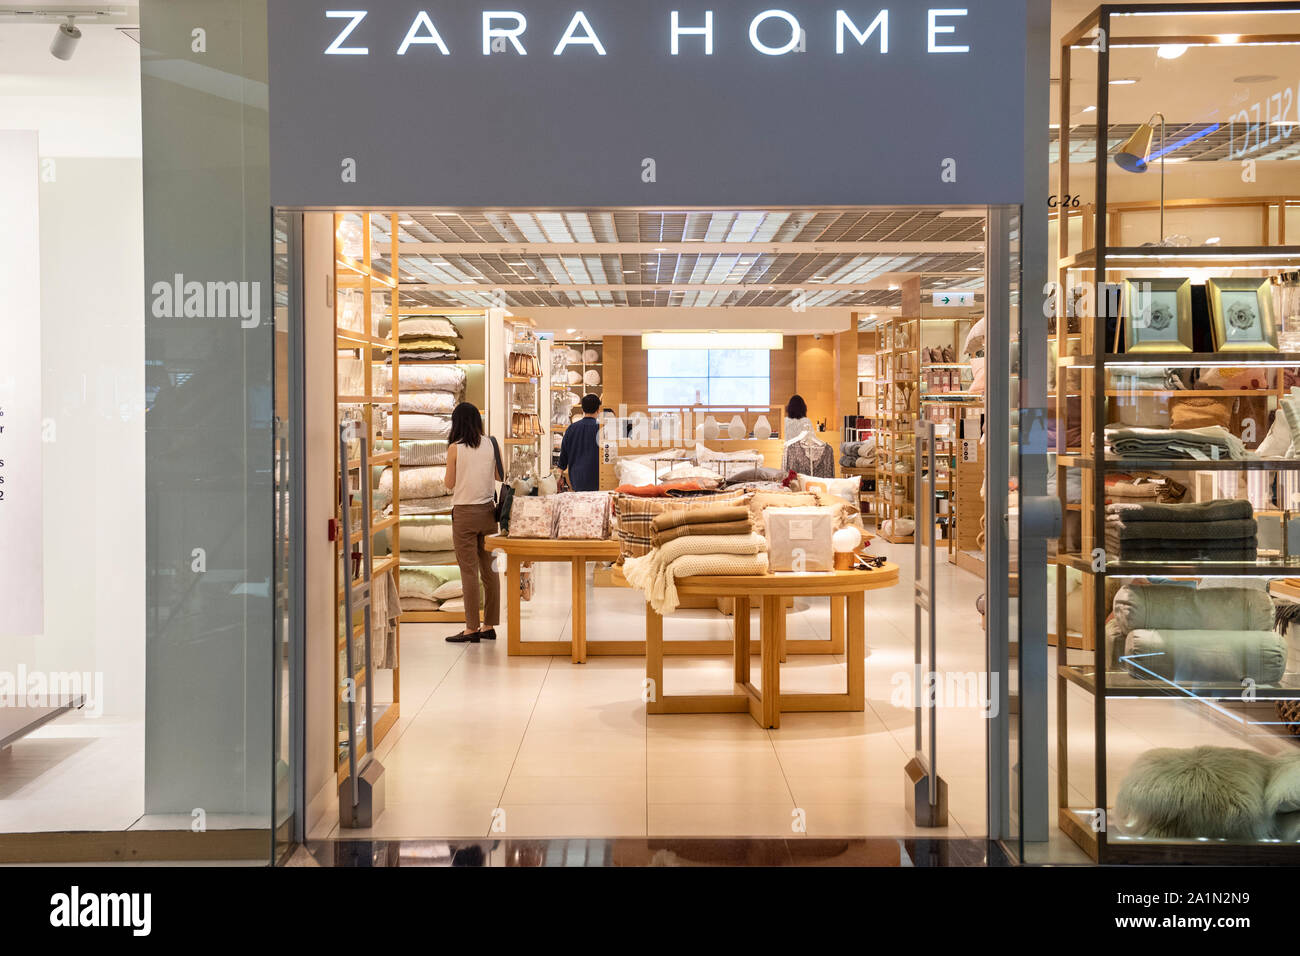 Zara home store immagini e fotografie stock ad alta risoluzione - Alamy